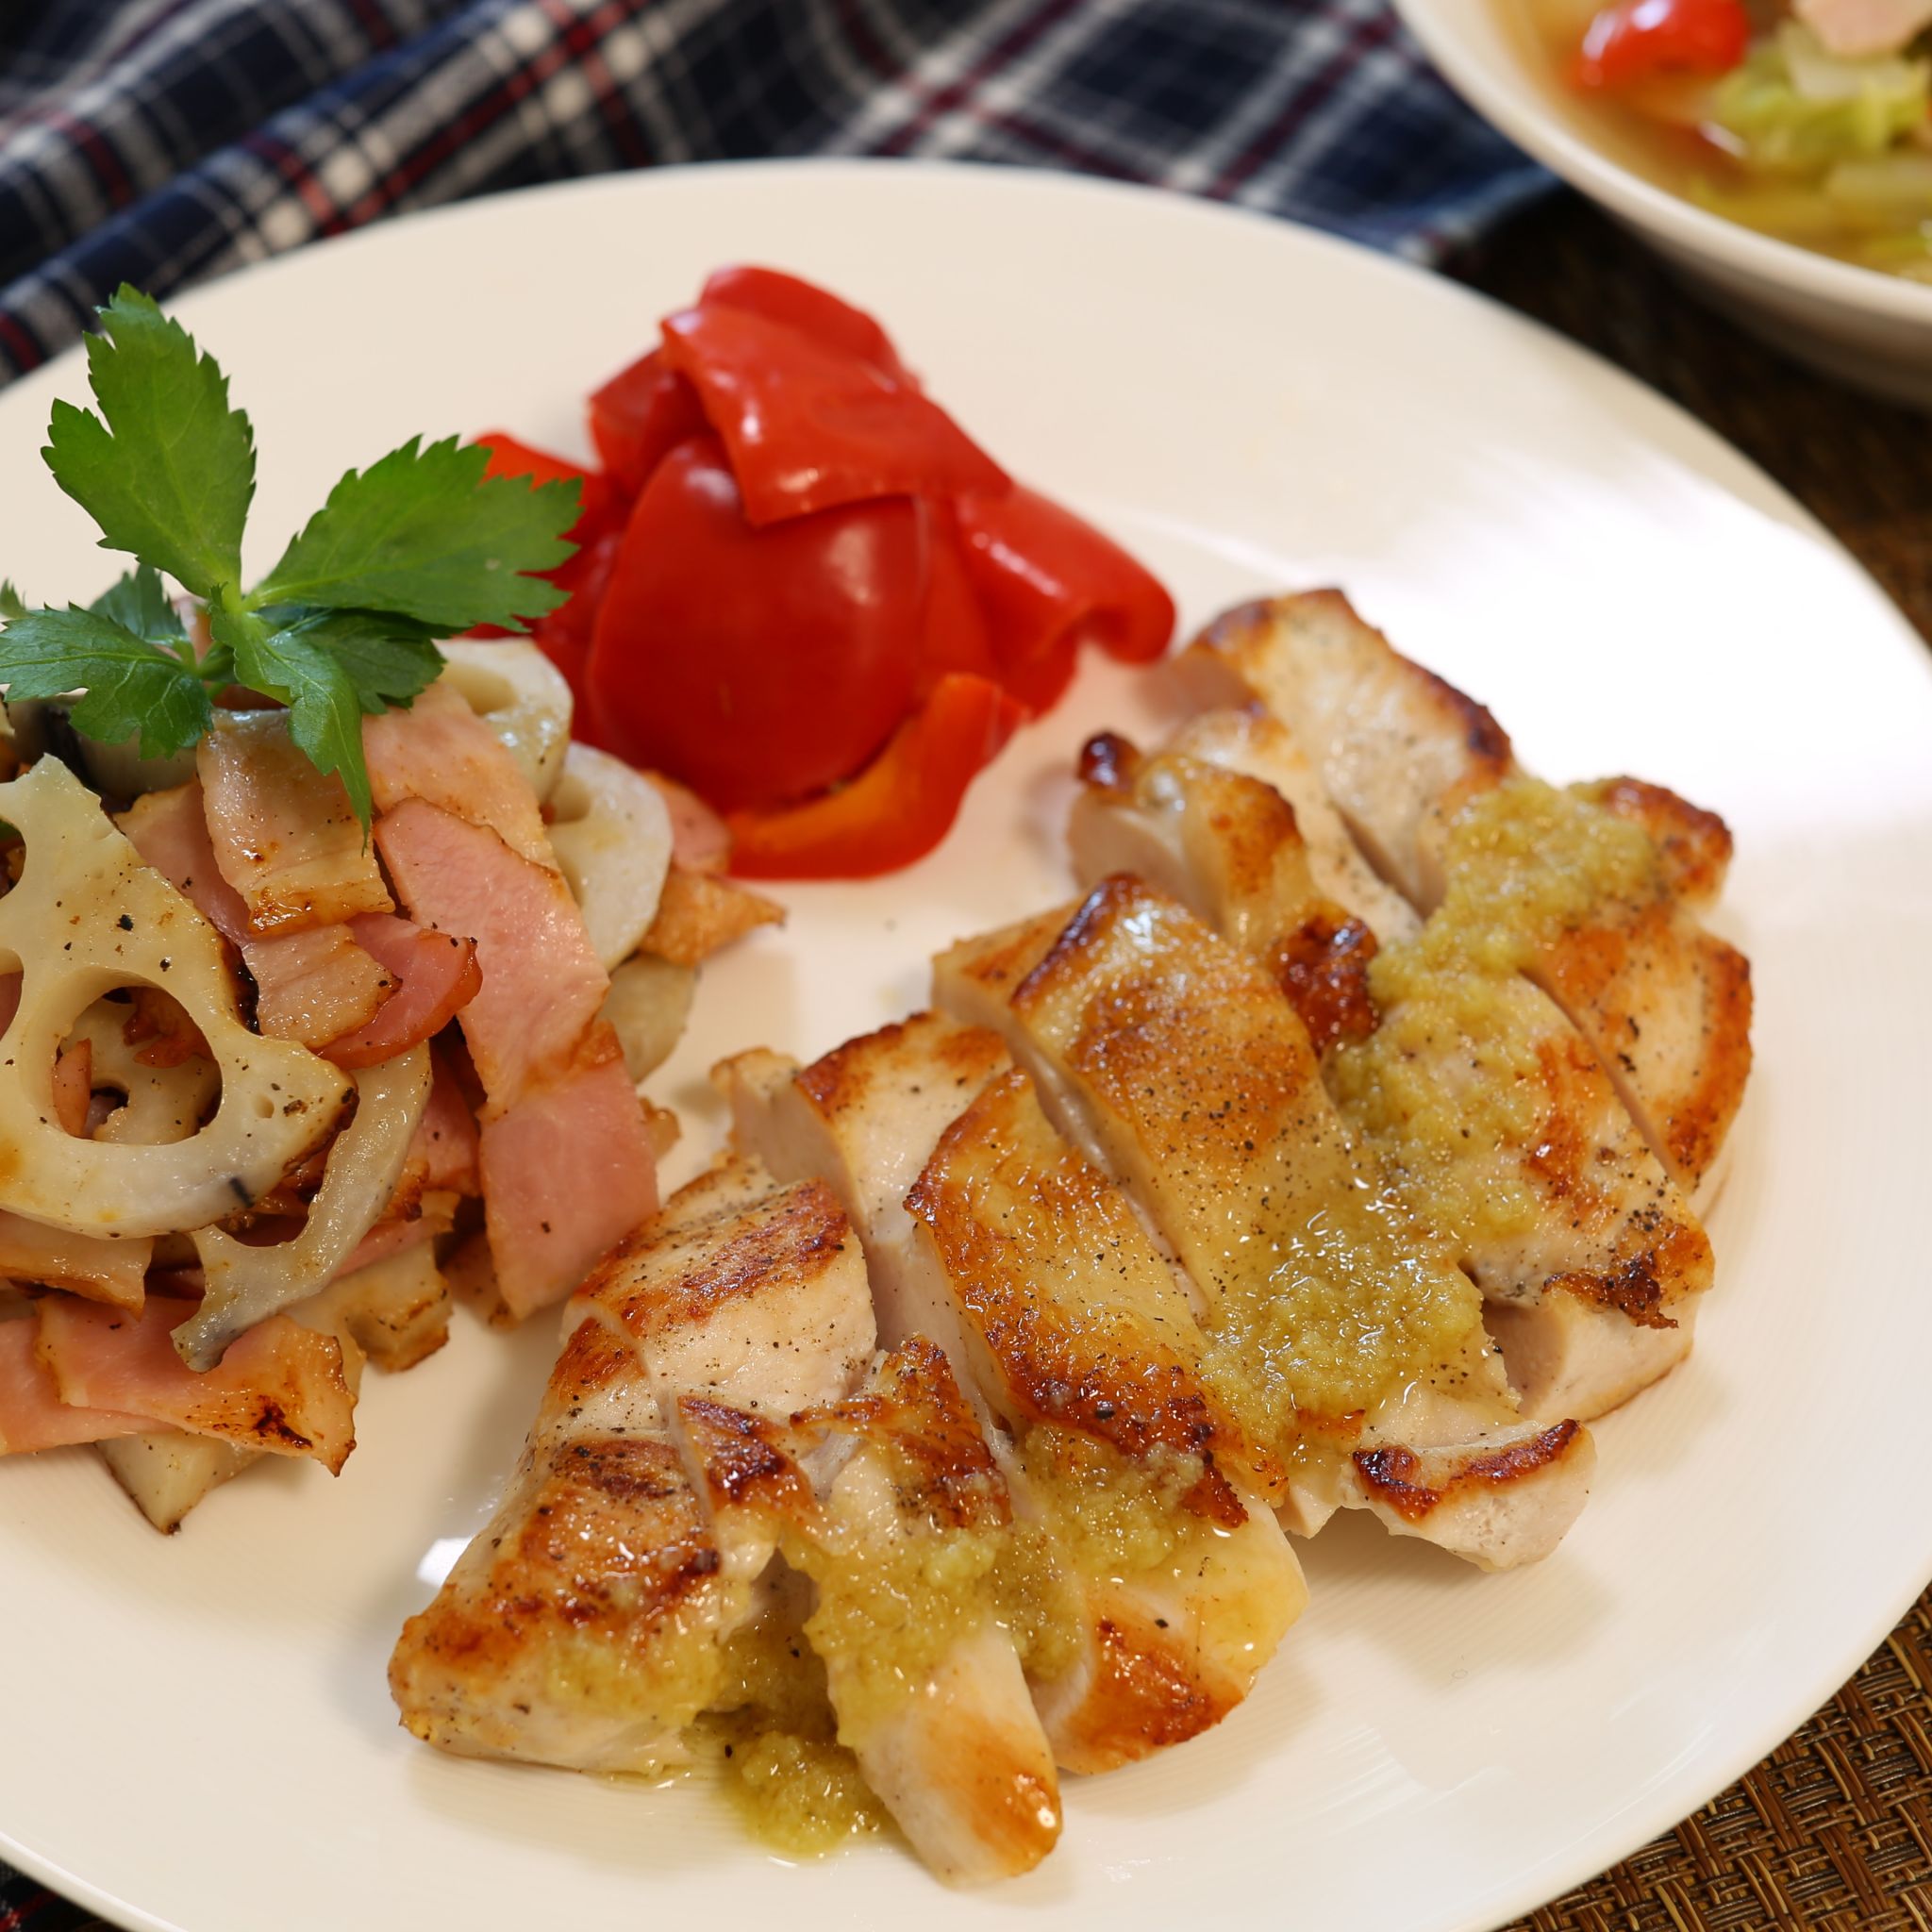 鶏むね肉のレシピ 柳澤英子さんの ガッツリステーキ やまでら くみこ のレシピ